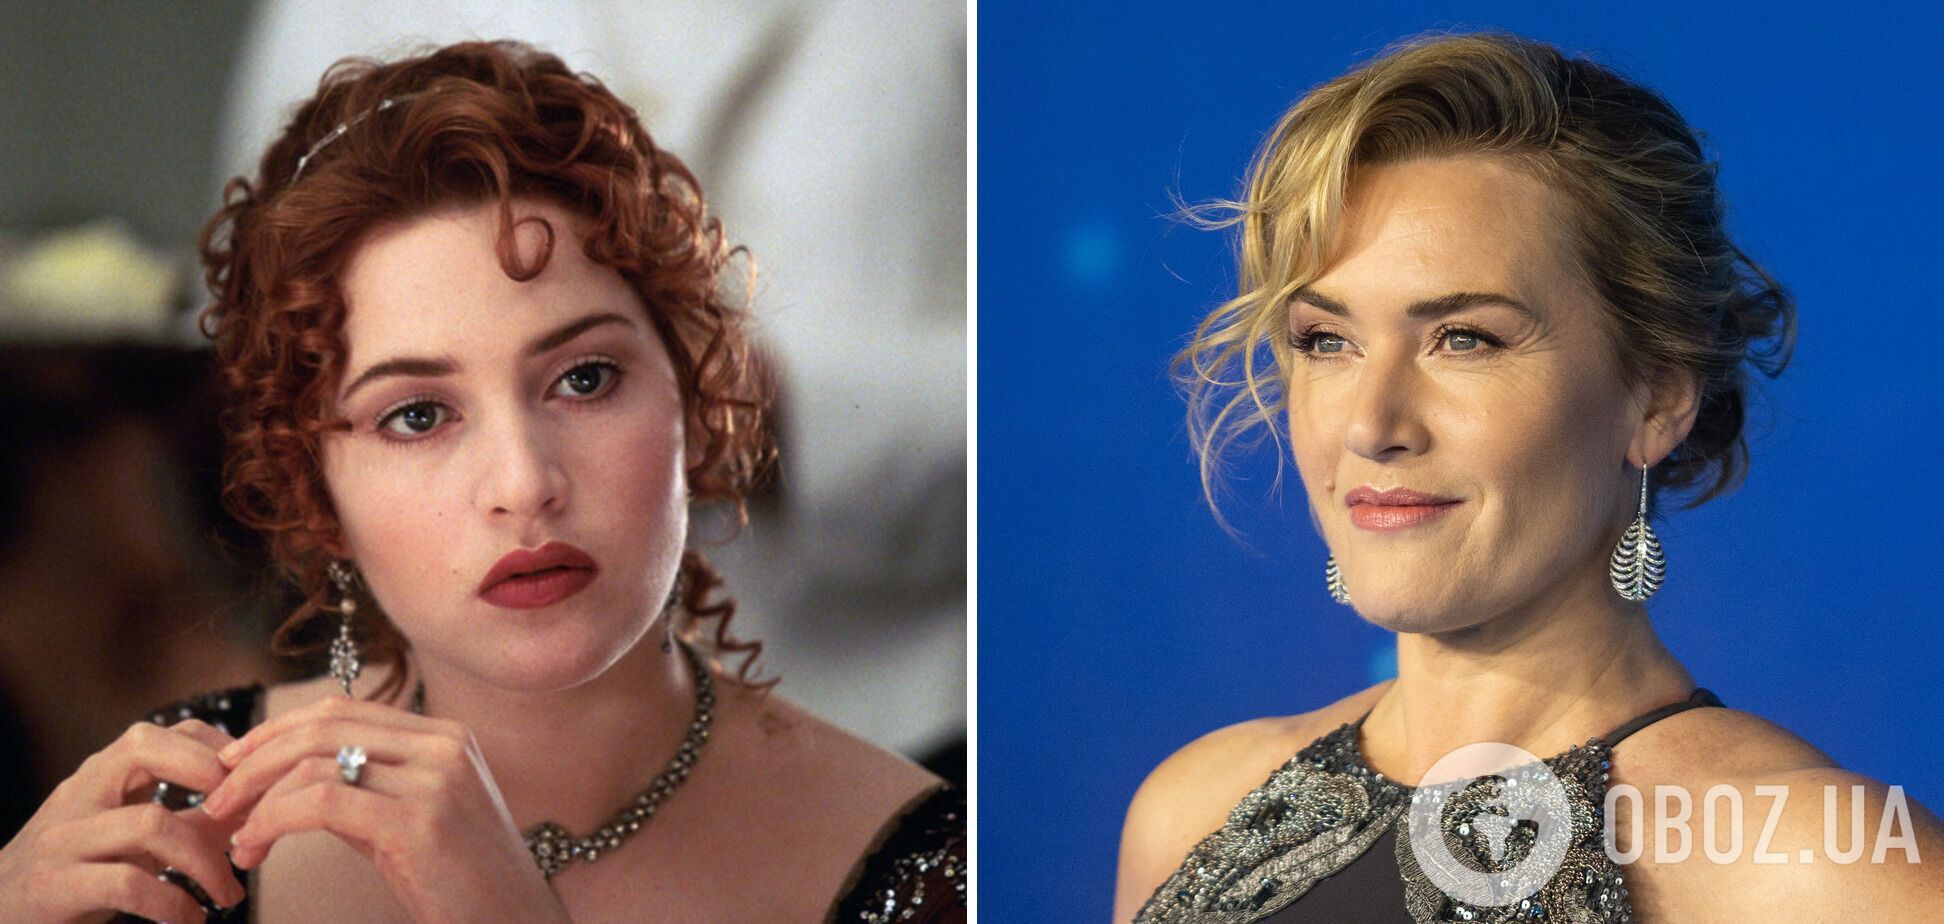 Как изменились актеры "Титаника" спустя 26 лет после выхода фильма. Фото 